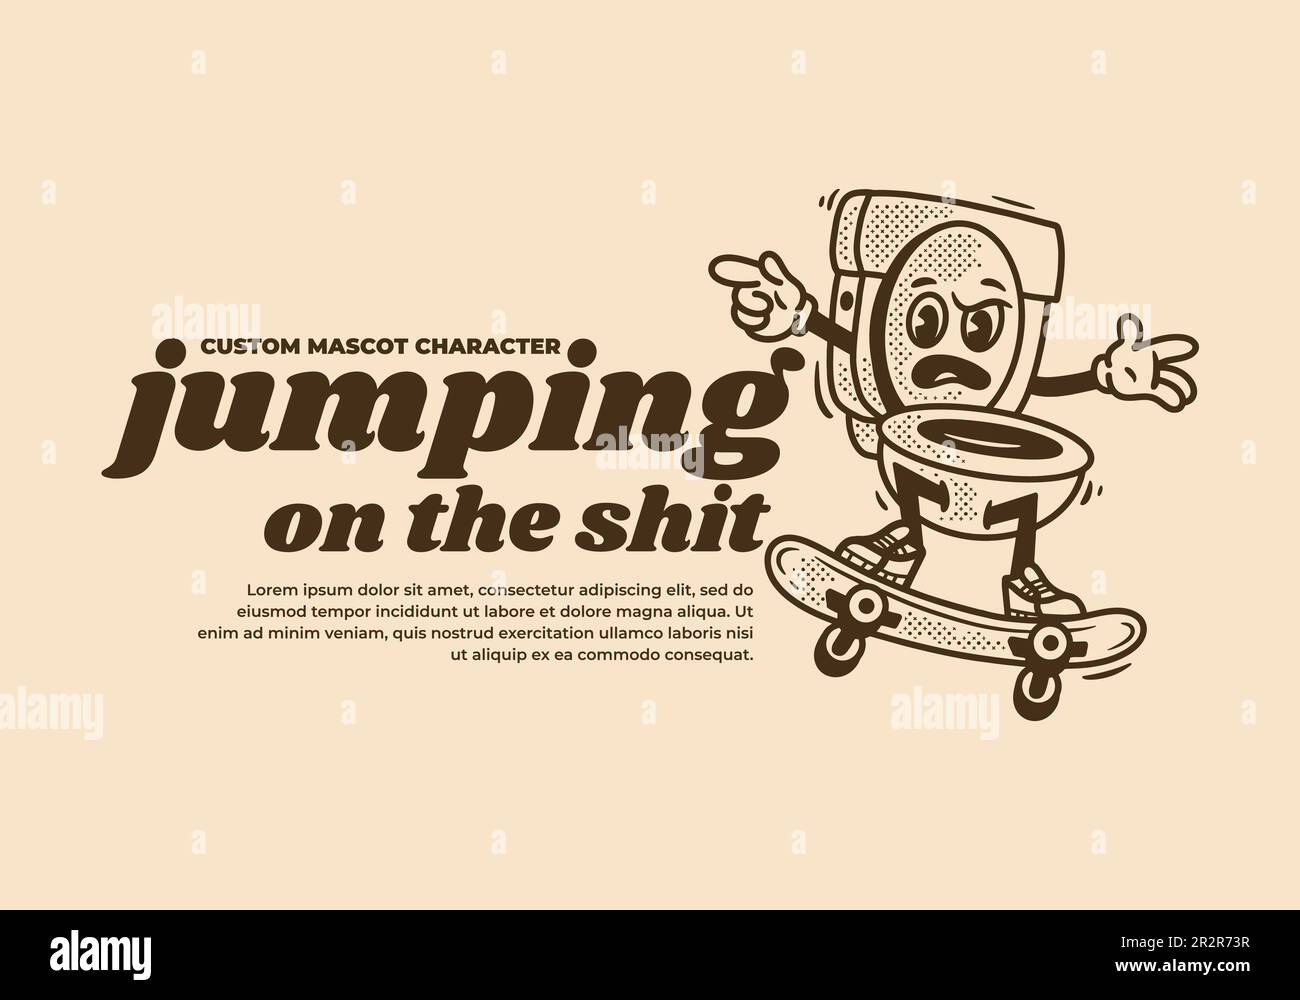 Motif mascotte vintage de saut de toilette sur planche à roulettes Illustration de Vecteur